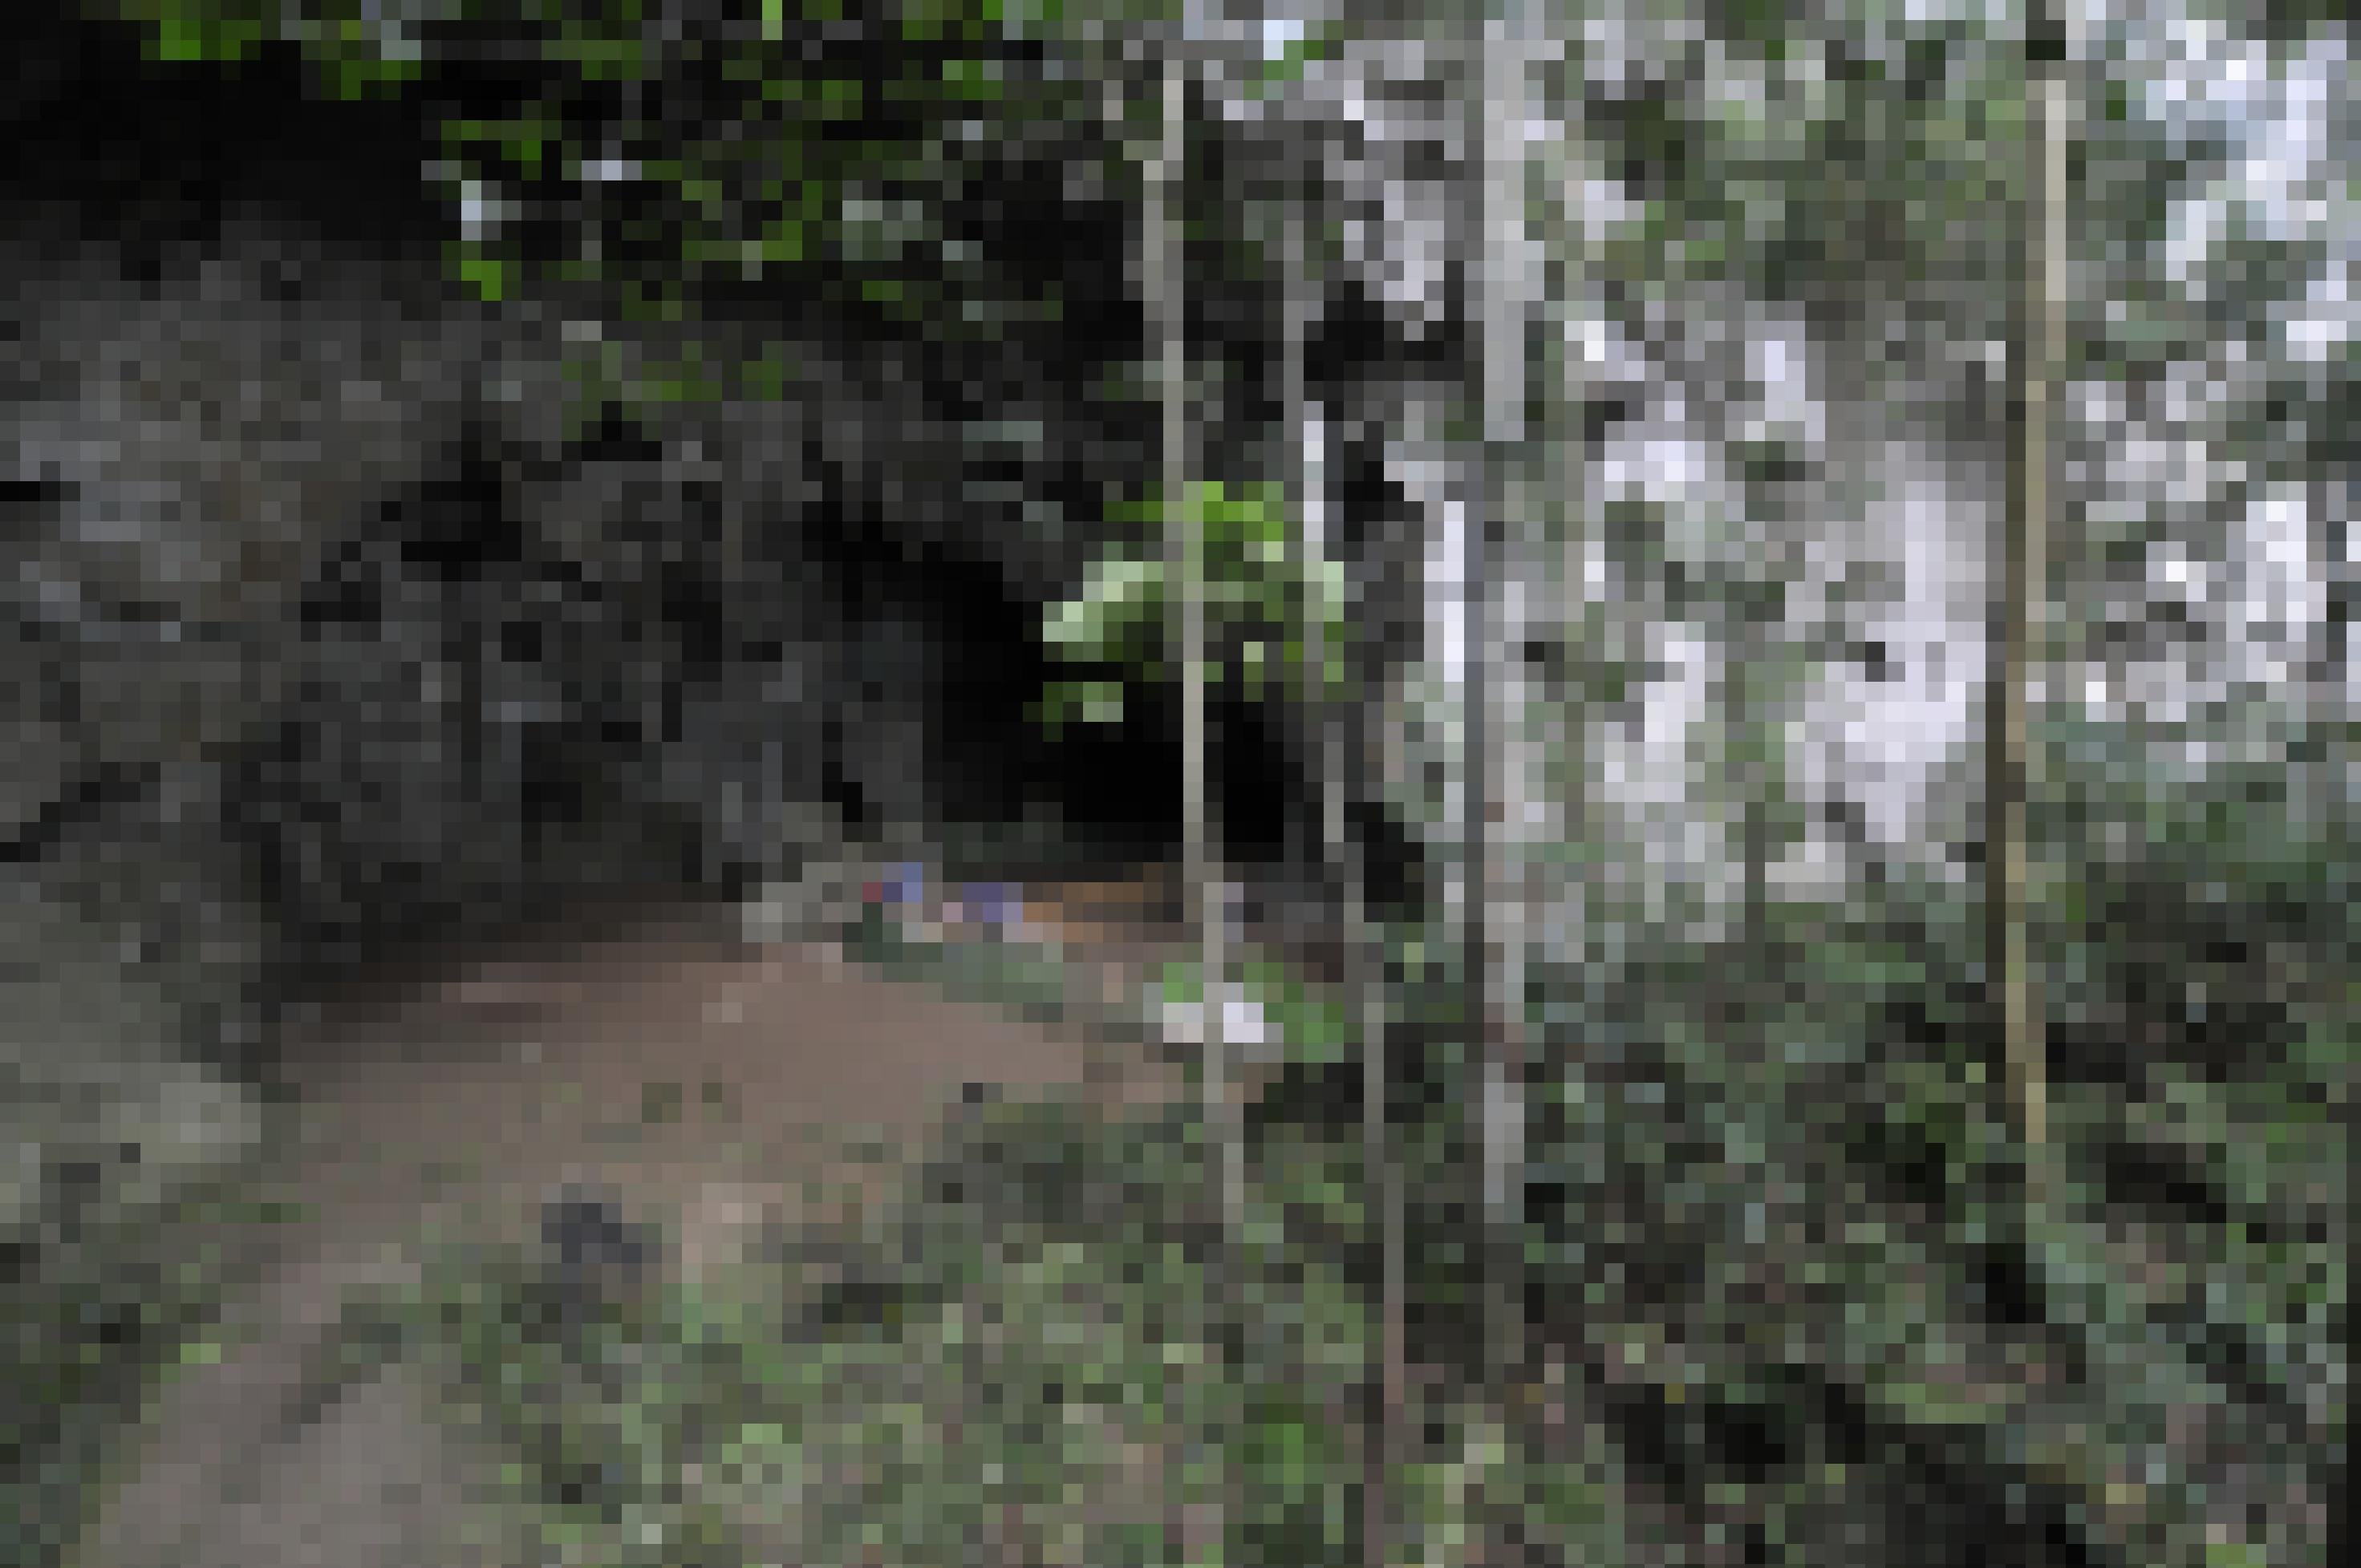 Das Bild zeigt den hoch gewölbten Eingang einer Höhle aus hellgrauem Gestein. Im Eingangsbereich, auf braunem, ebenem Boden, ist eine Gruppe von Forschenden zu erkennen, die an Arbeitstischen sitzen und im Vergleich zum Höhleneingang winzig wirken. Im Vordergrund sind Büsche, kleine Bäumchen und die schmalen Stämme größerer Bäume zu sehen.